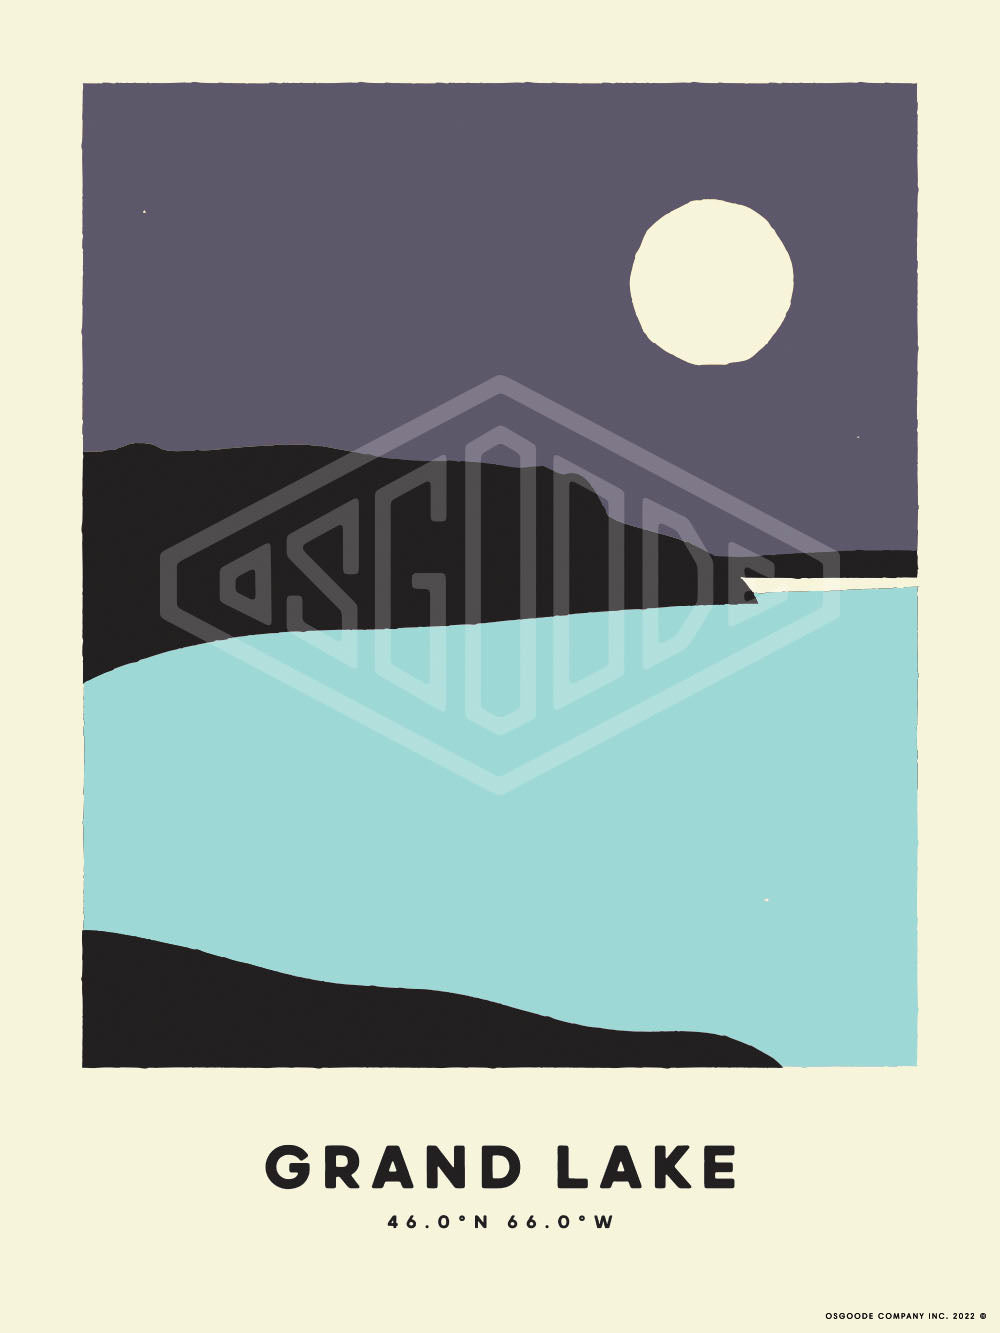 GRAND LAKE PRINT